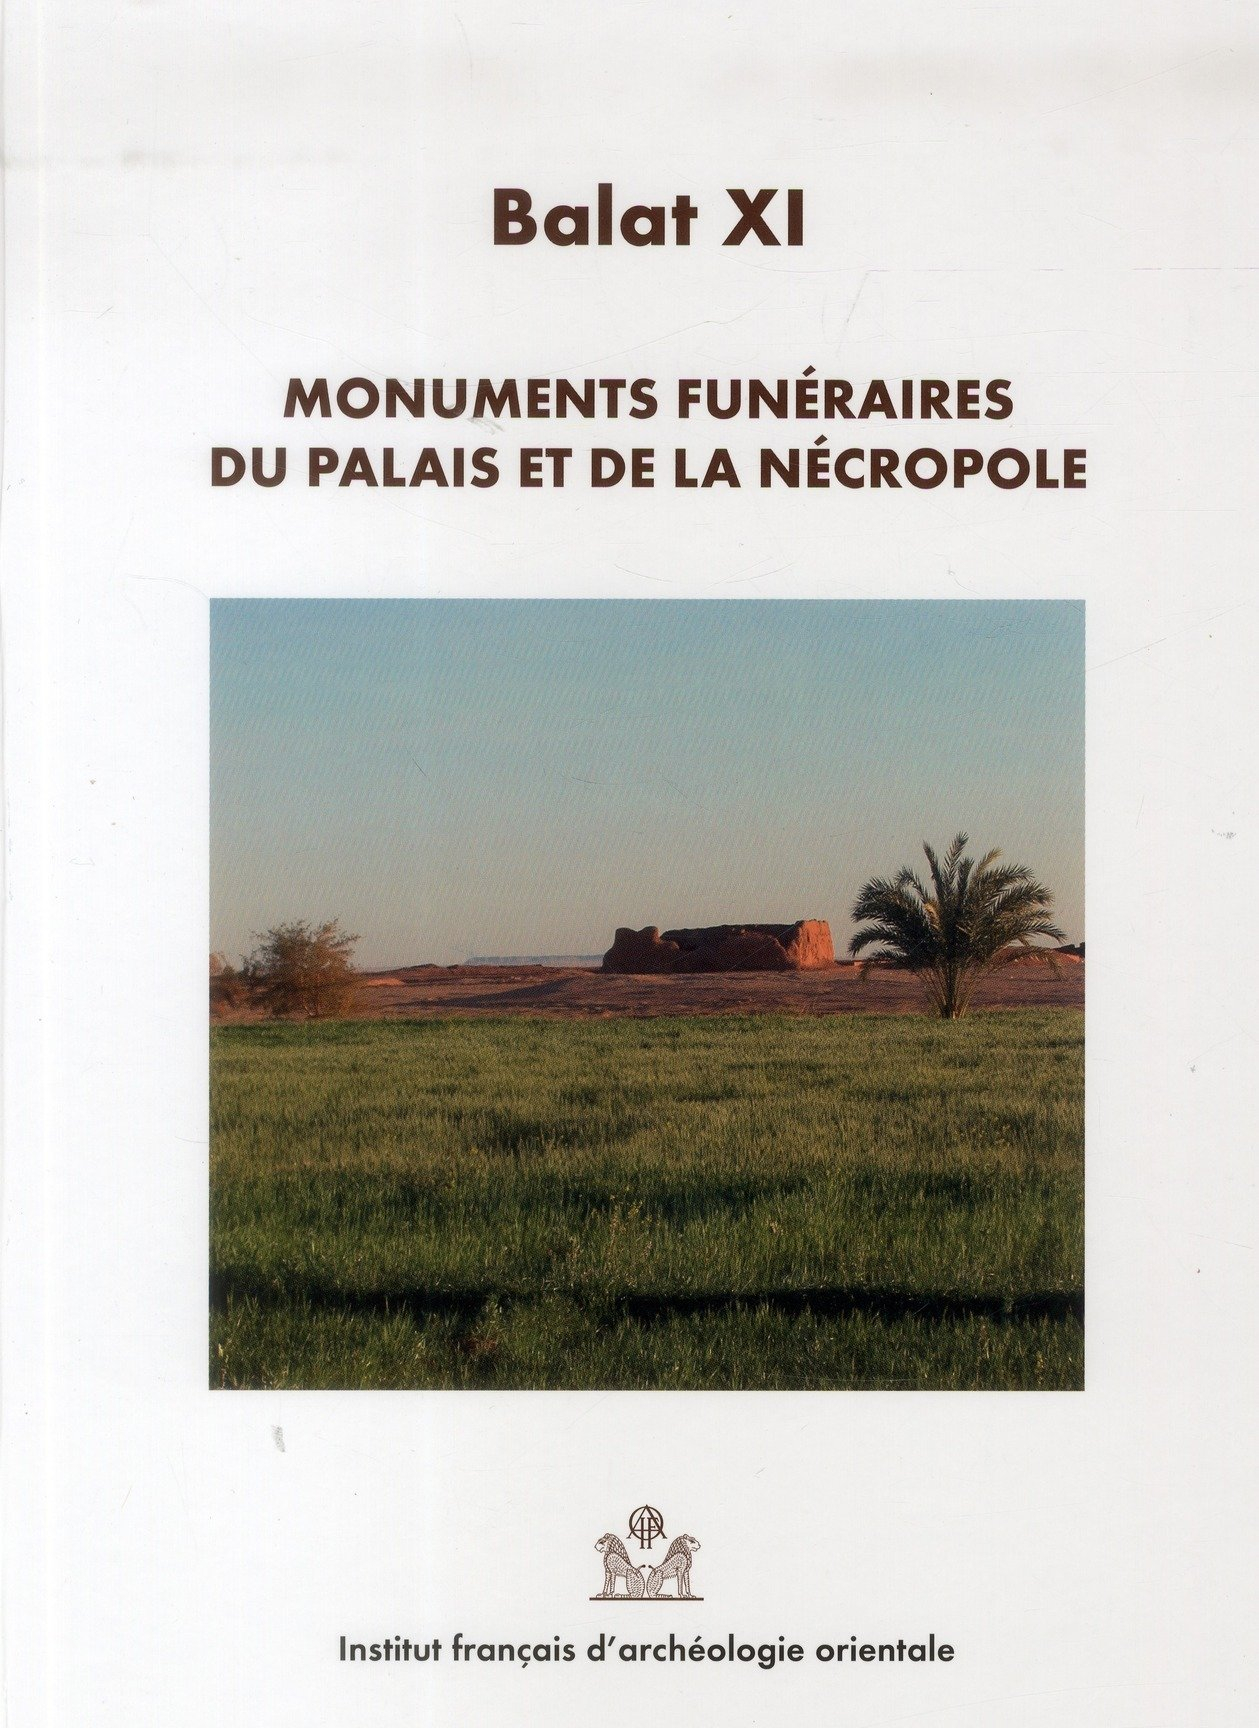 Balat. Vol. 11. Monuments funéraires du palais et de la nécropole